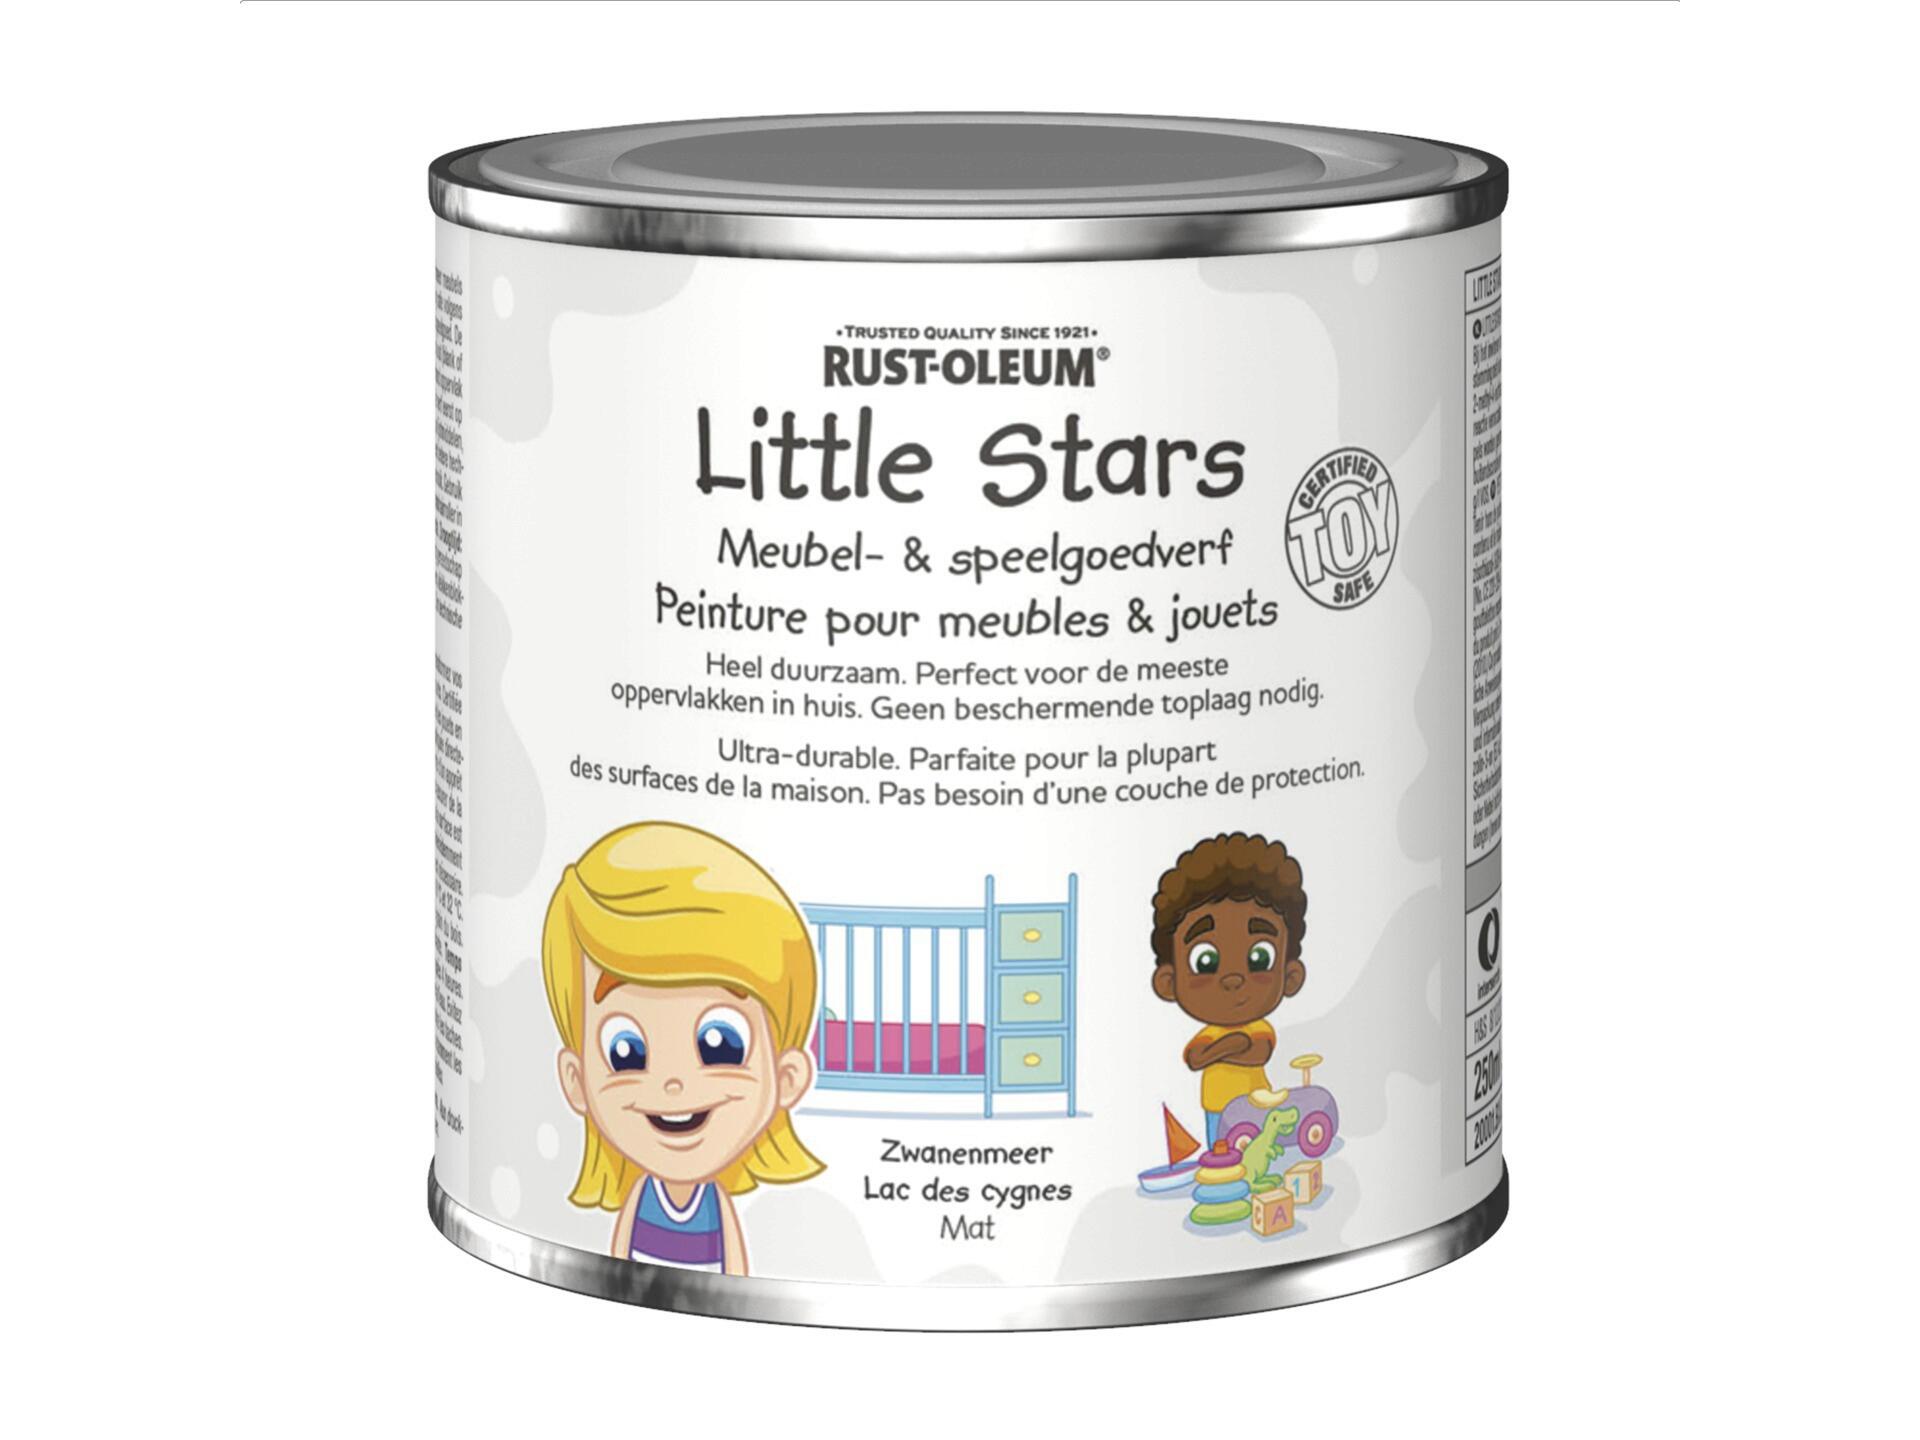 Rust-oleum Little Stars peinture pour meubles et jouets 250ml lac des cygnes